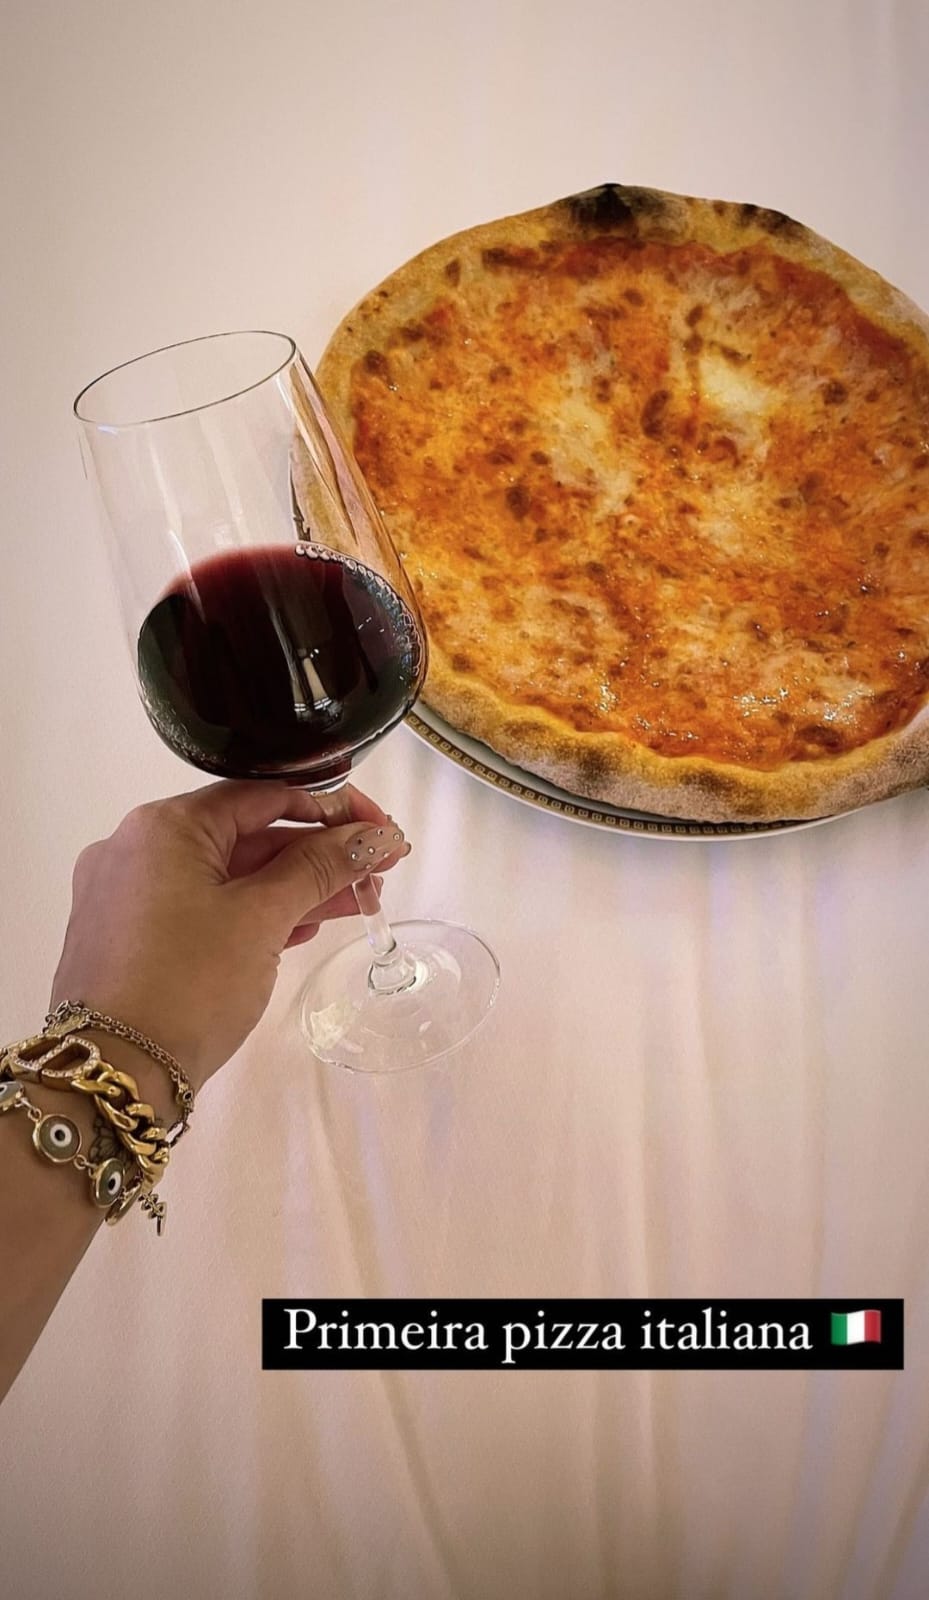 Carla Diaz come pizza diretamente de Milão, na Itália - Instagram